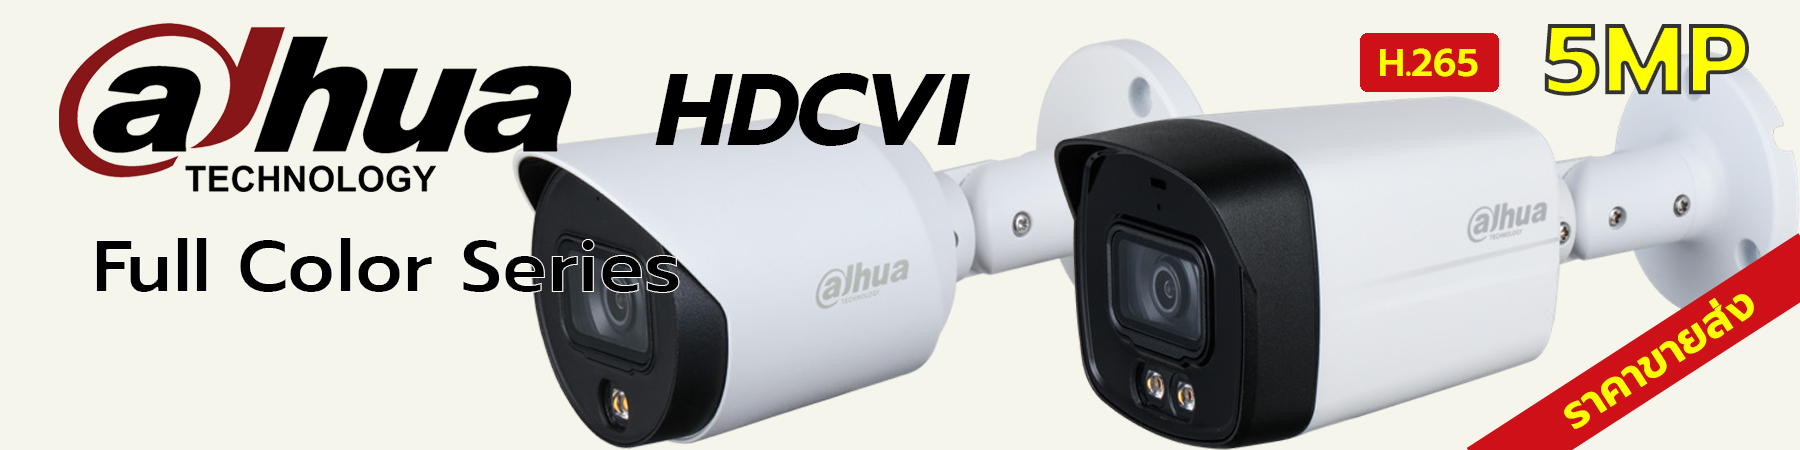 กล้องวงจรปิด Dahua, กล้องวงจรปิด Dahua Full Color, Dahua Full Color 5MP, Dahua Built-in Mic, HAC-HFW1509T-A-LED, HAC-HDW1509TL-A-LED, HAC-HFW1509TLM-A-LED, HAC-HDW1509T-A-LED